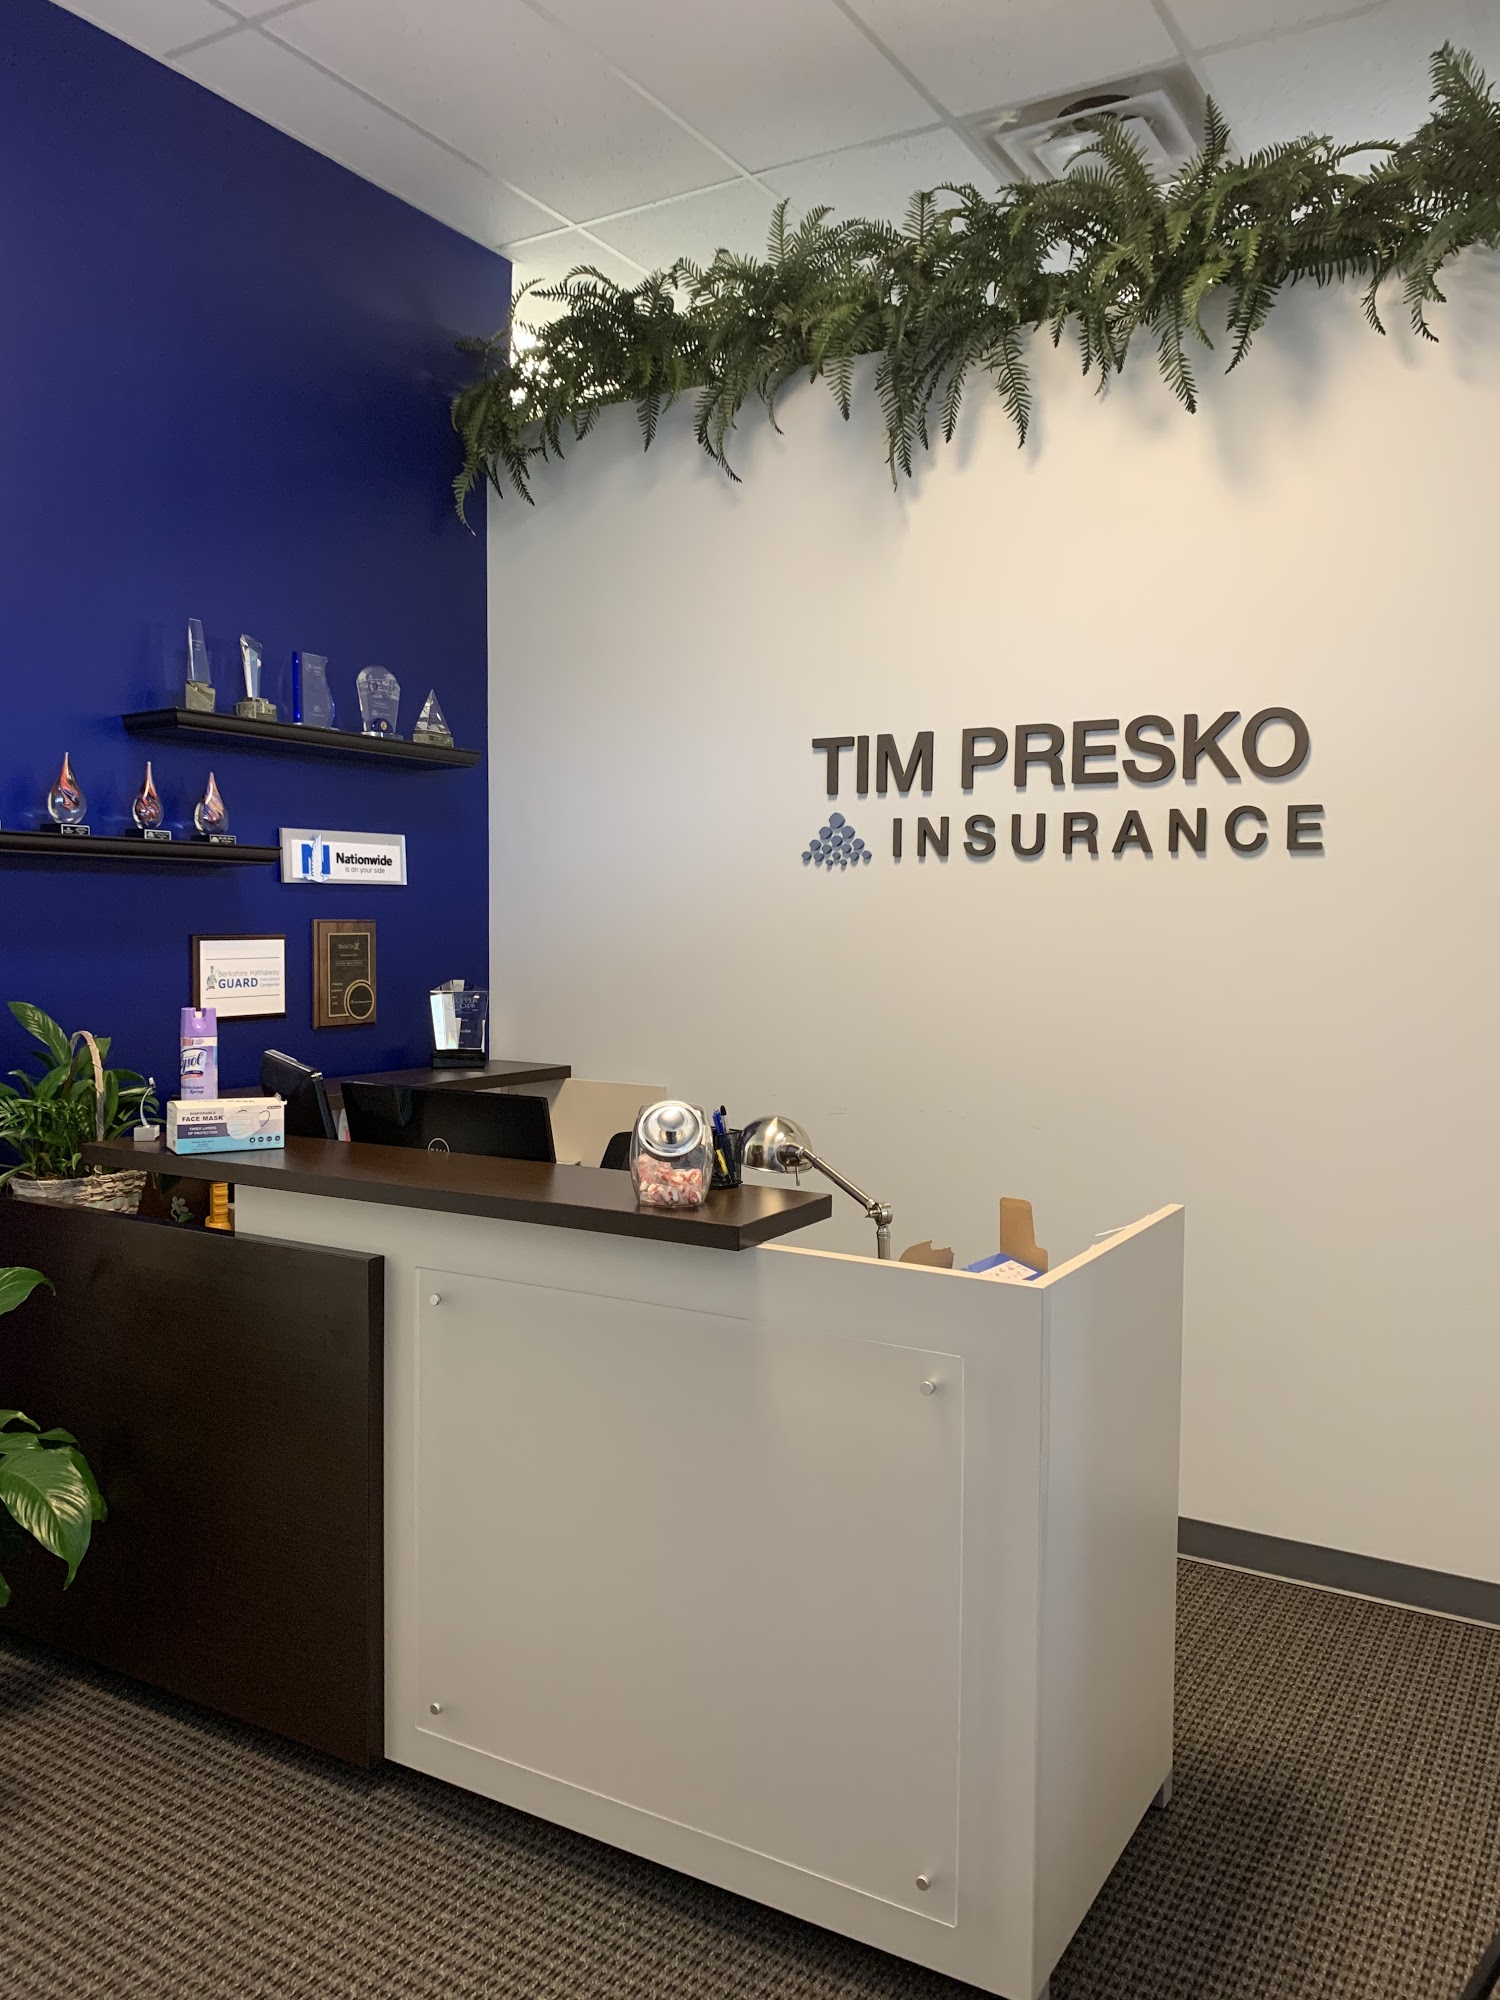 Tim Presko Insurance